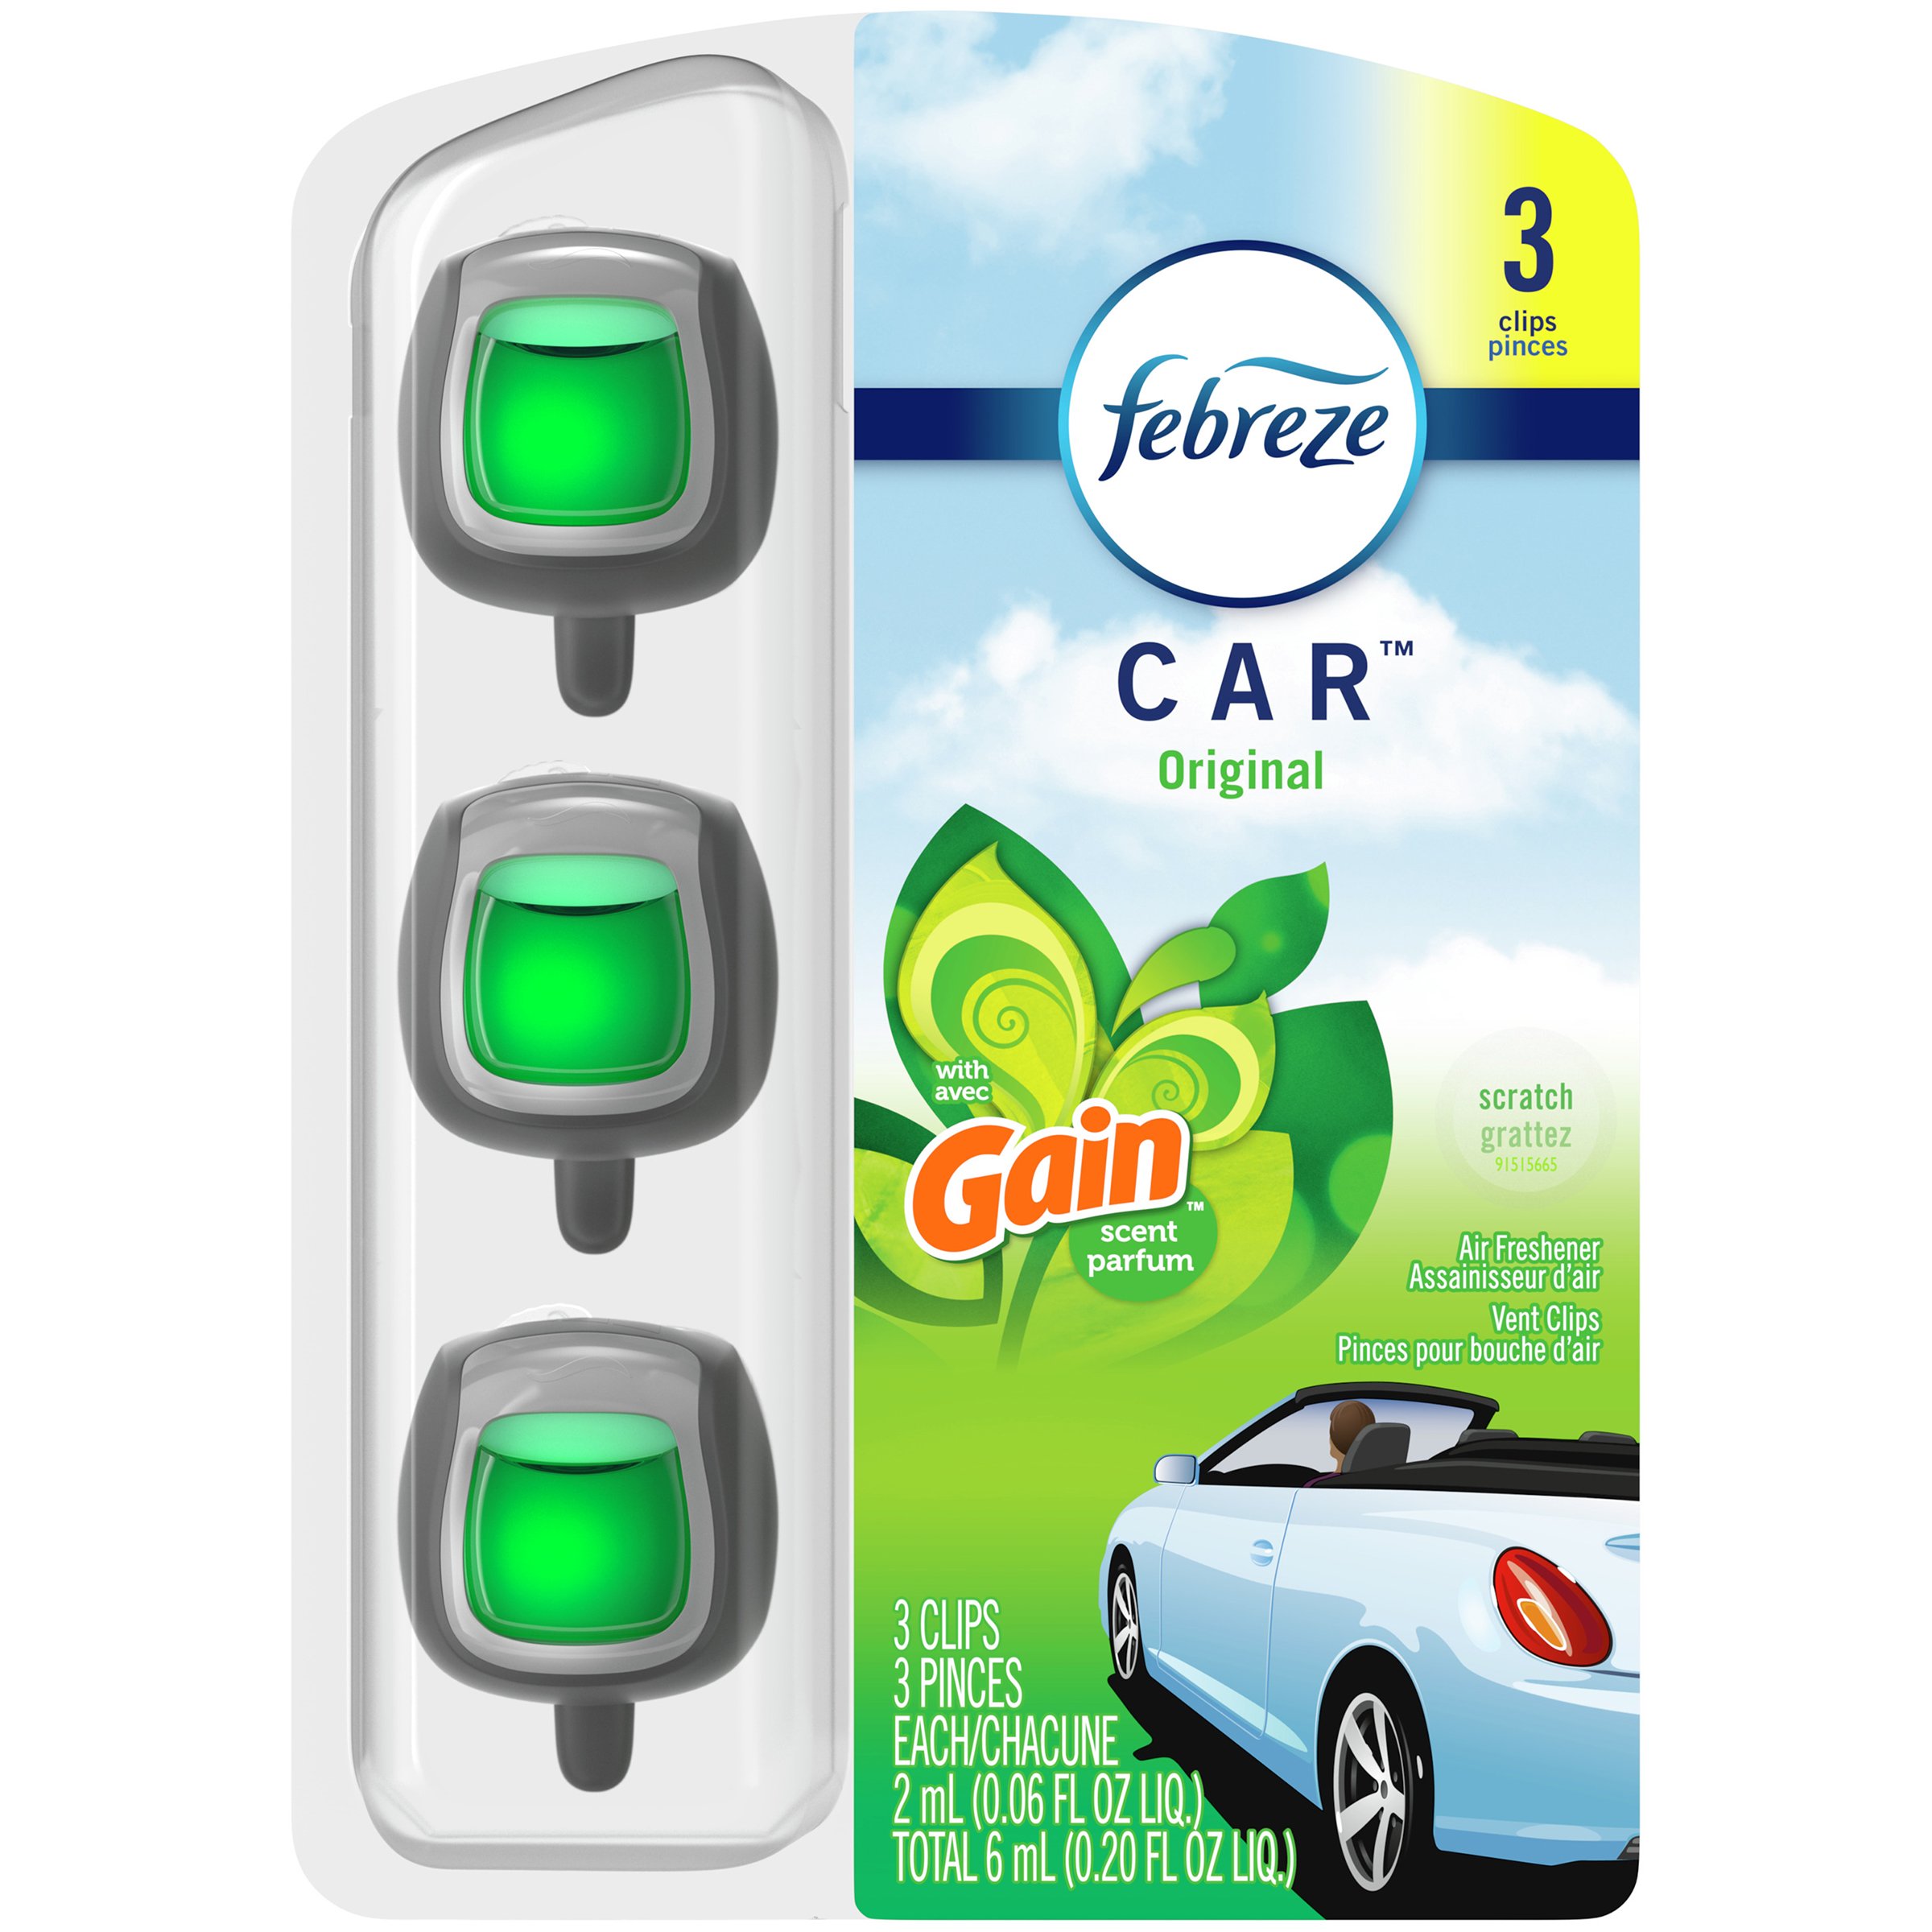 Febreze Car Gain Original Scent Air Freshener Vent Clips